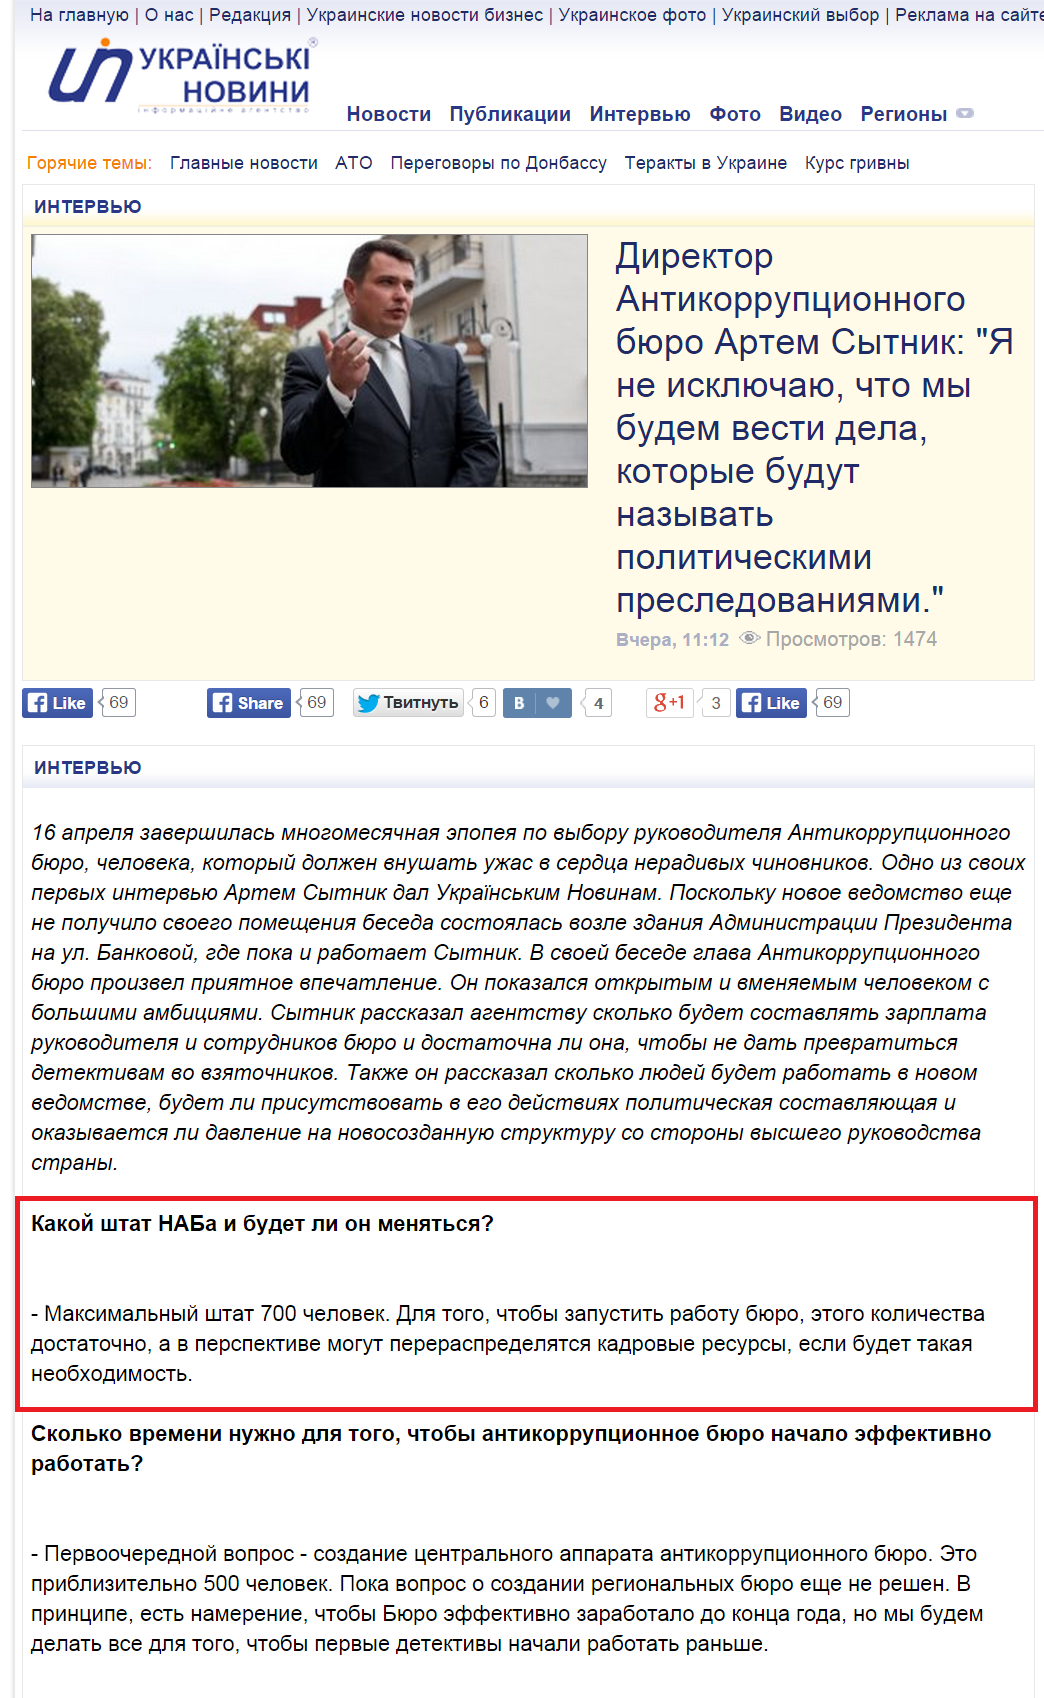 http://ukranews.com/ru/interview/2015/05/07/593